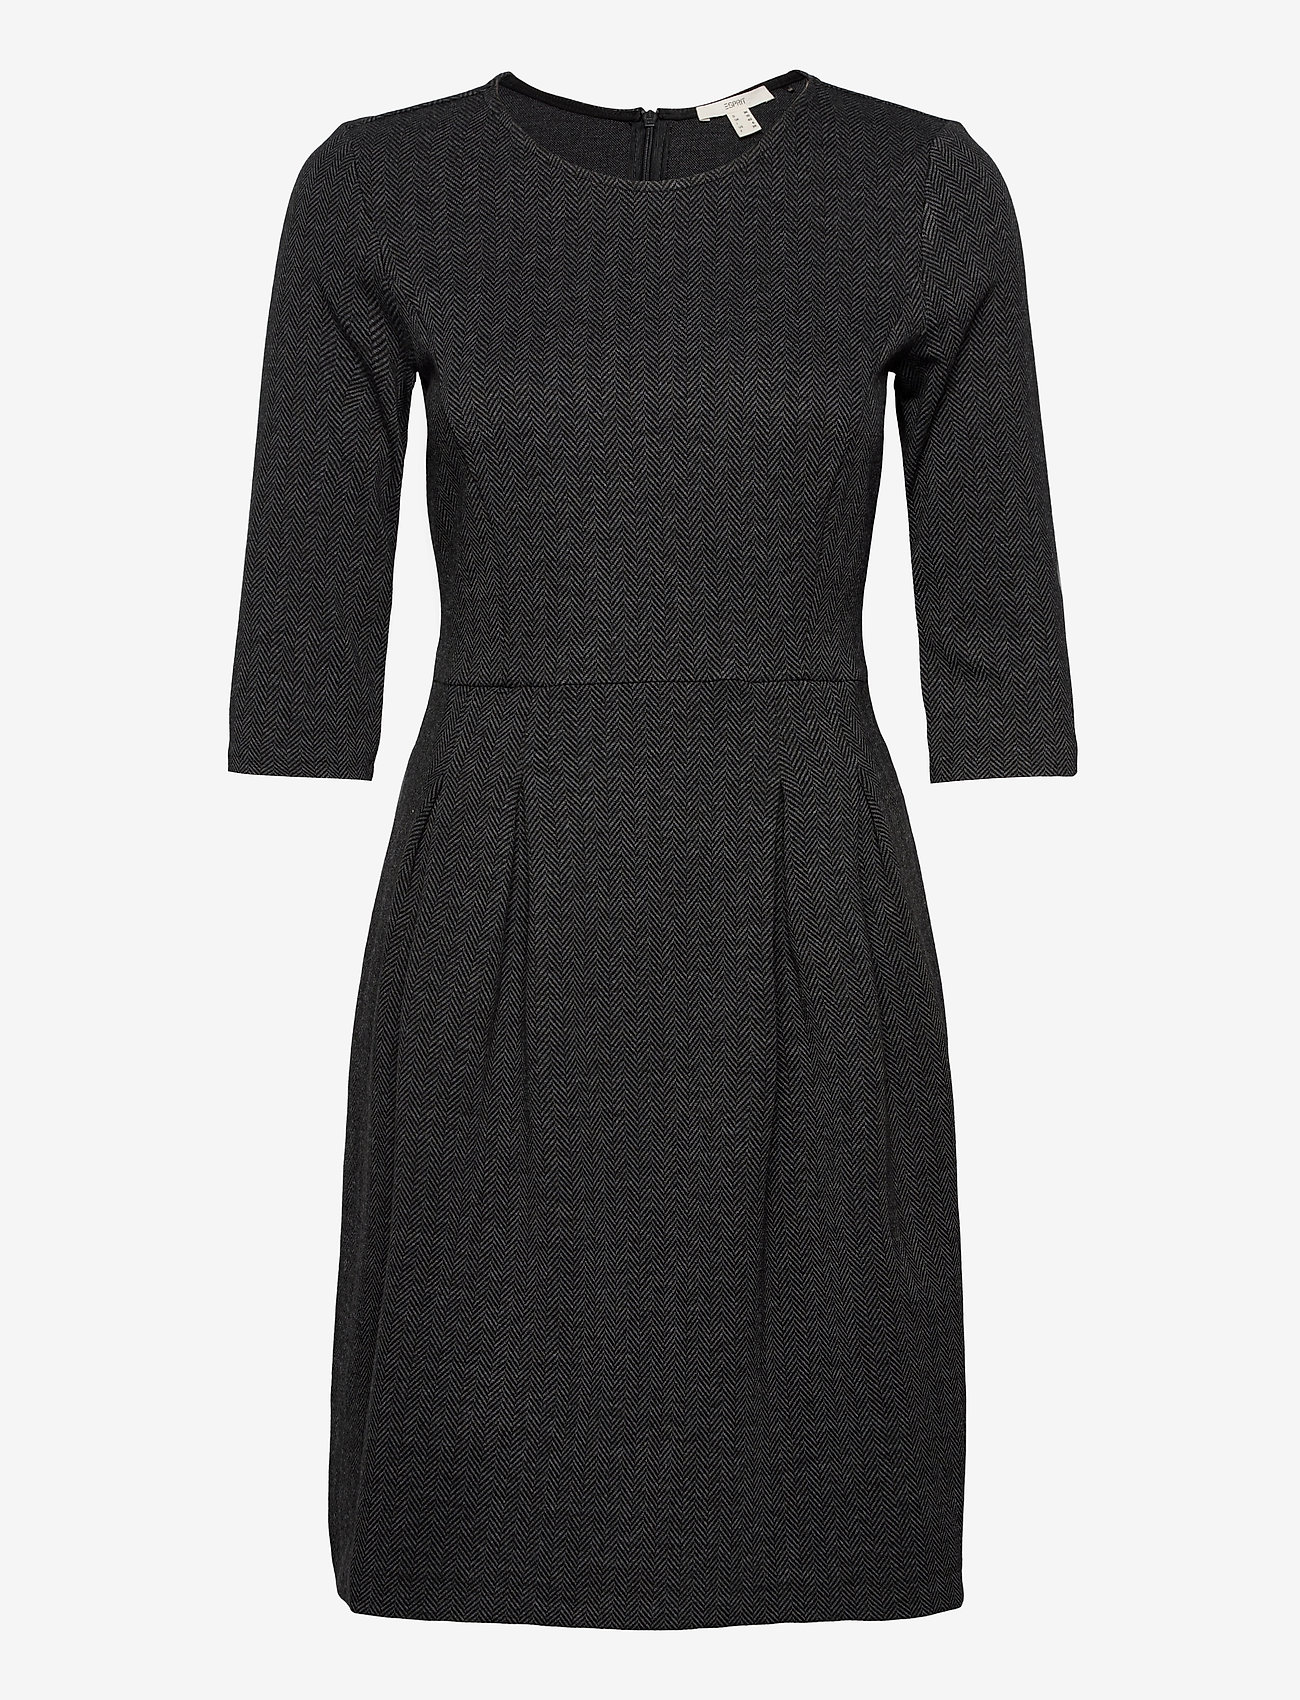 Esprit Casual Dresses Woven - Midi dresses | Boozt.com